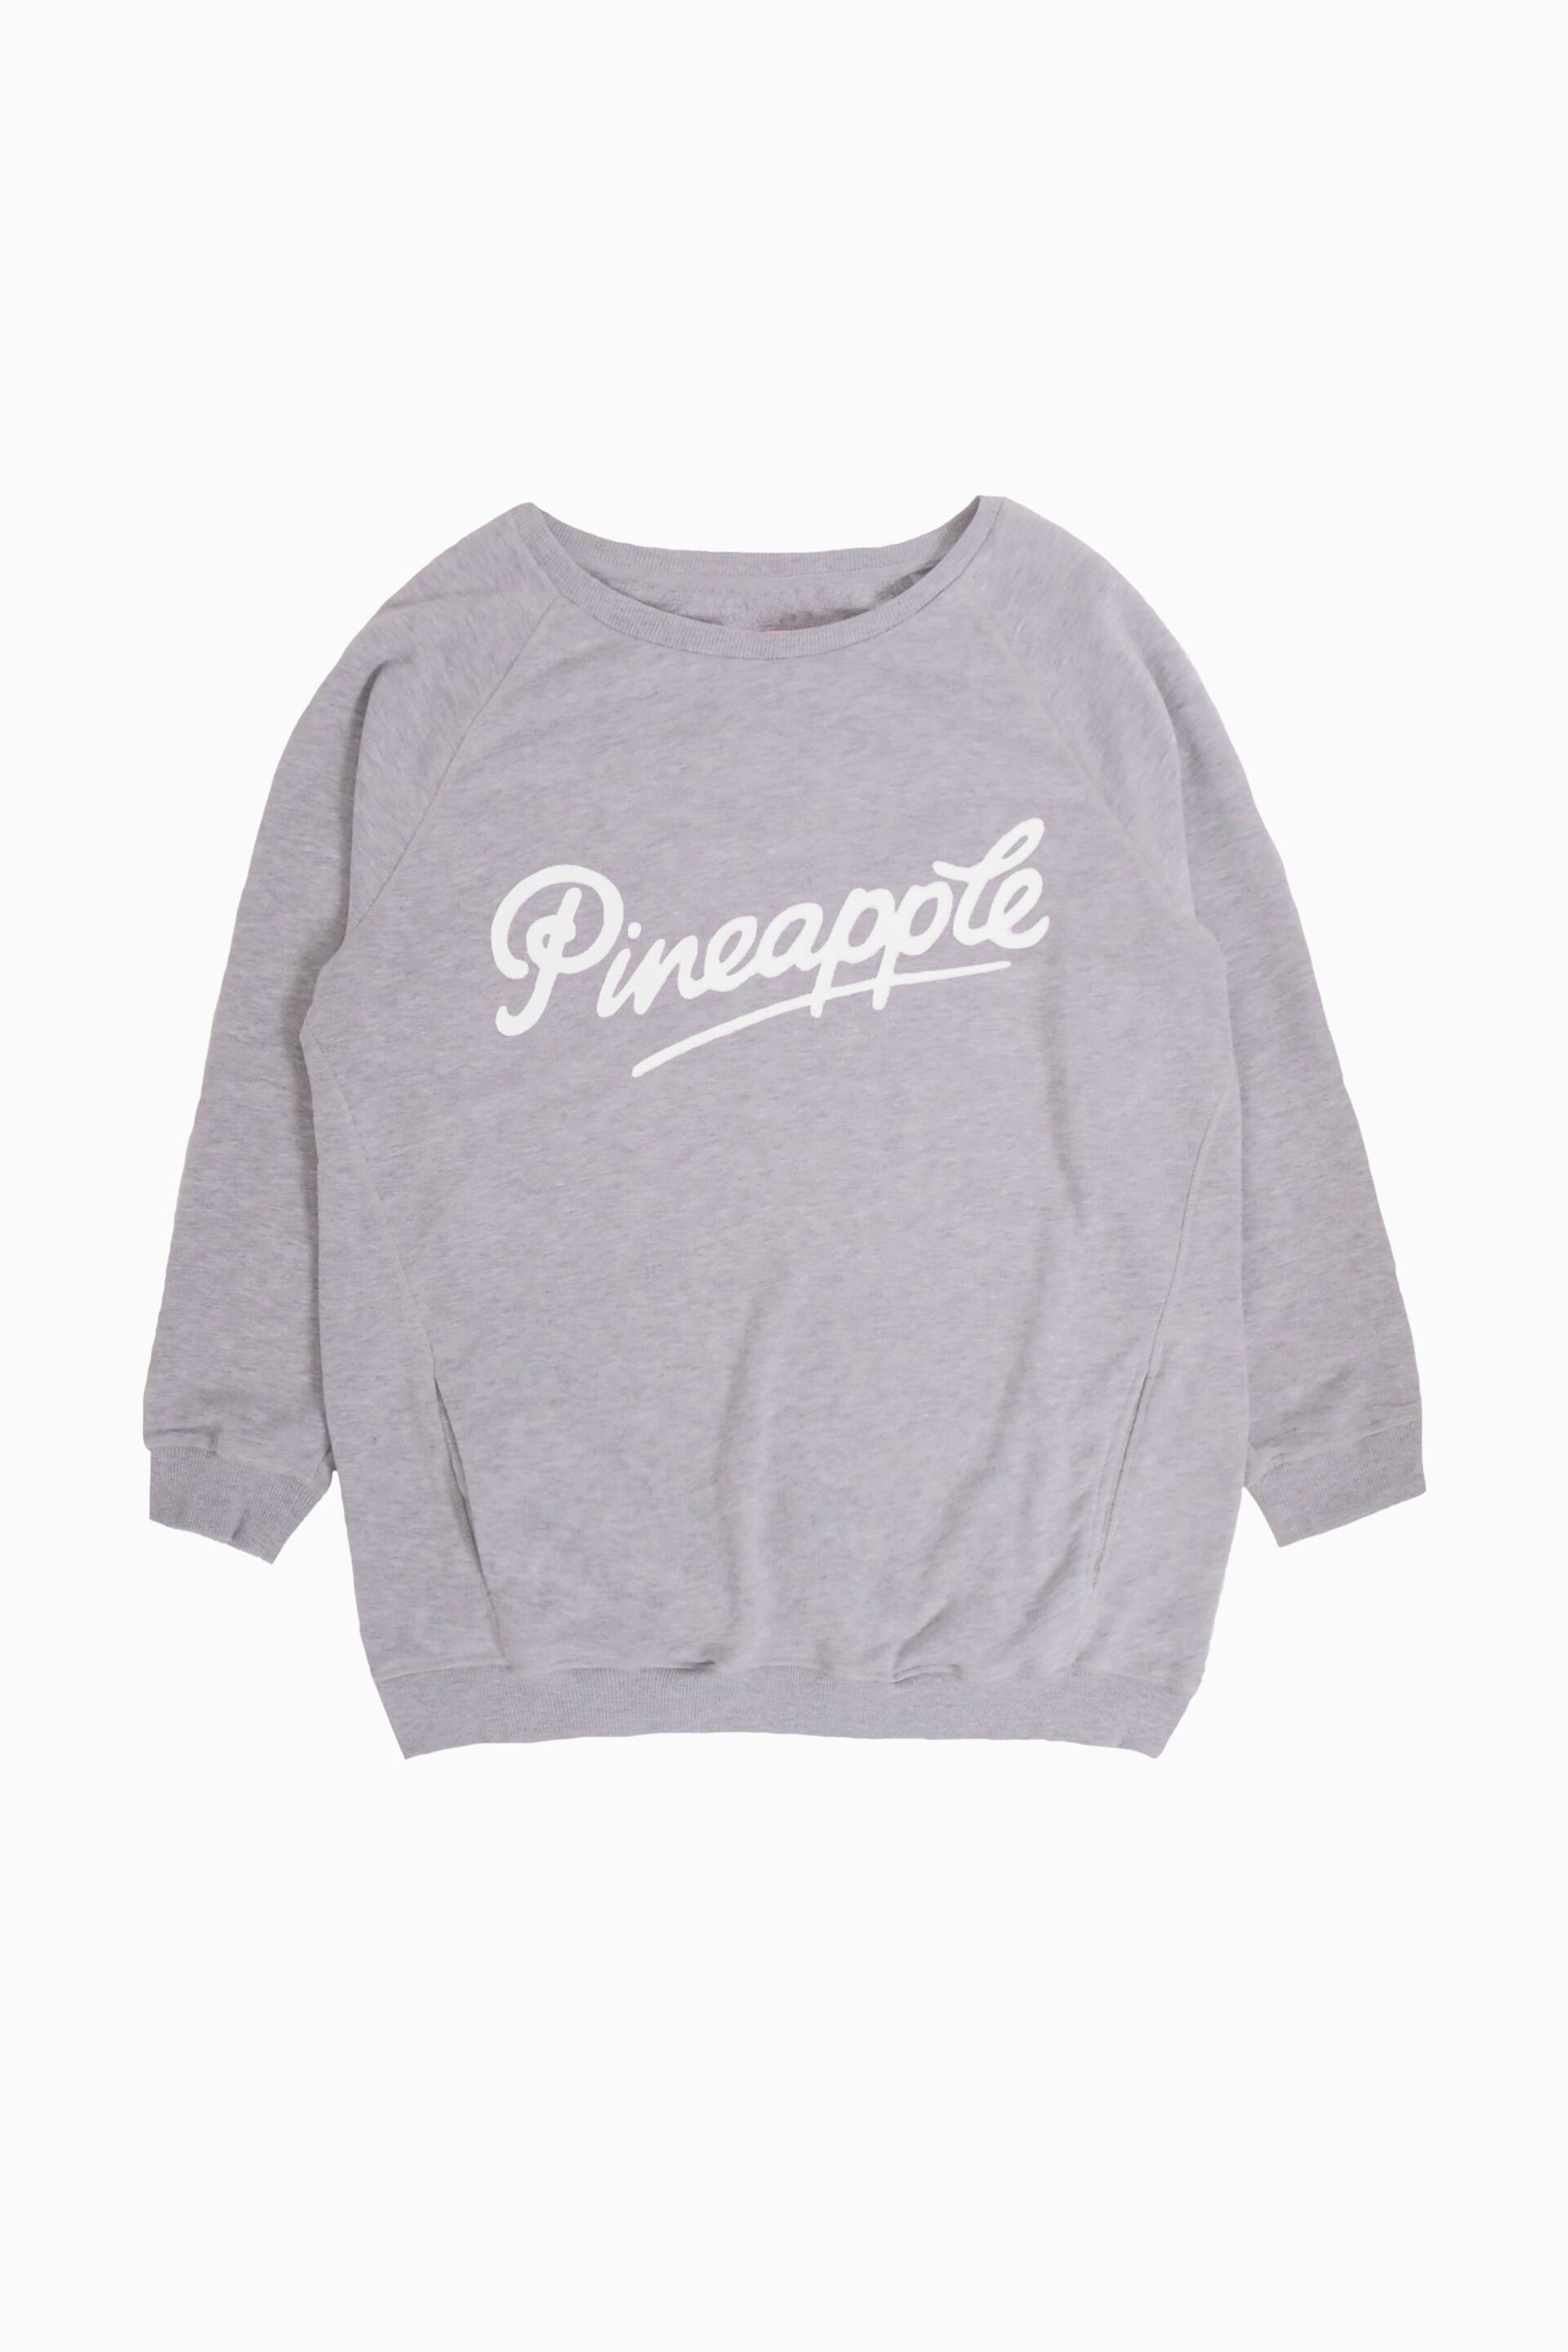 Pineapple Grey Oversized Monster Sweatshirt - Image 5 of 5